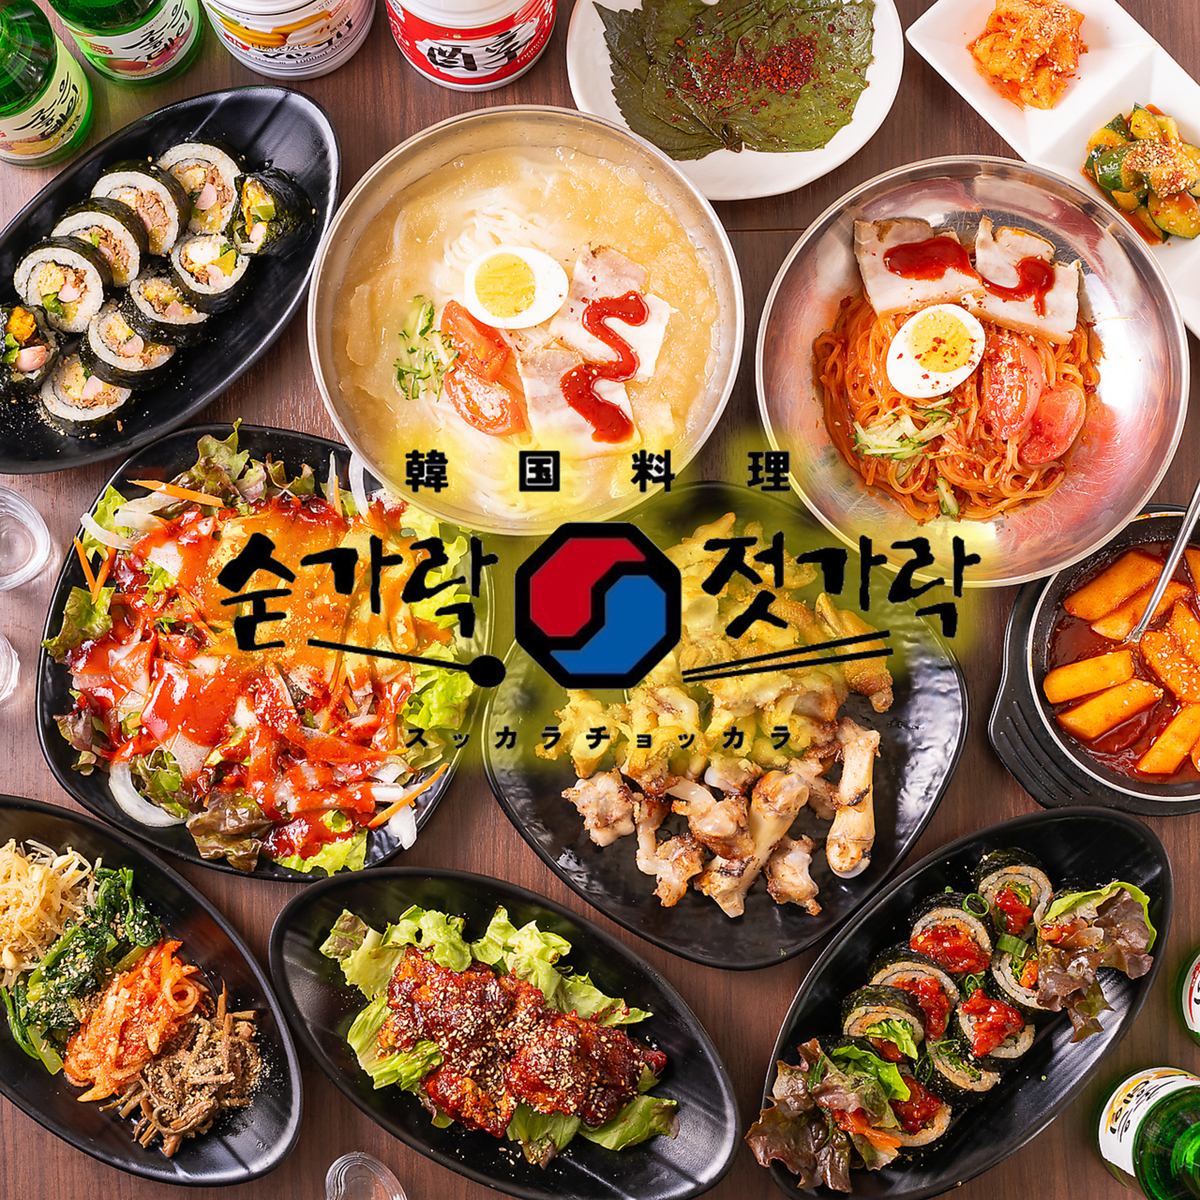 请在韩国居酒屋享受正宗的韩国料理和各种酒类，度过愉快的时光。